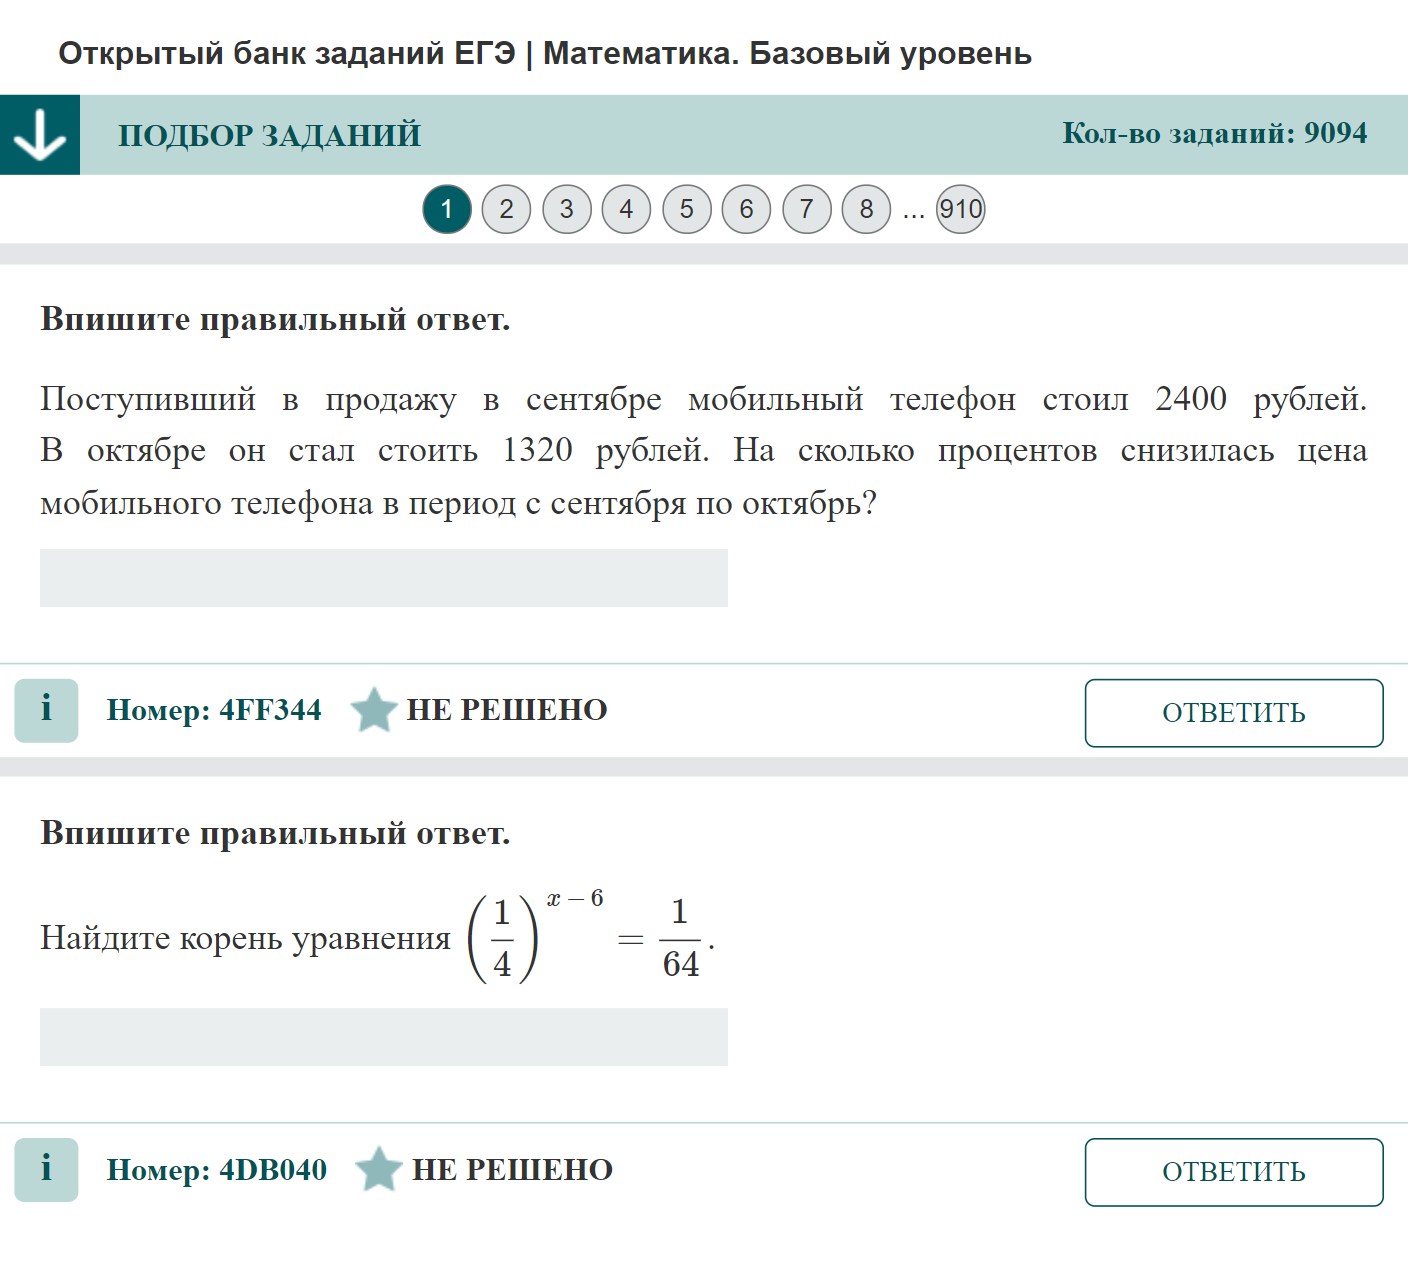 Пример задания ЕГЭ по базовой математике. Источник: ege.fipi.ru